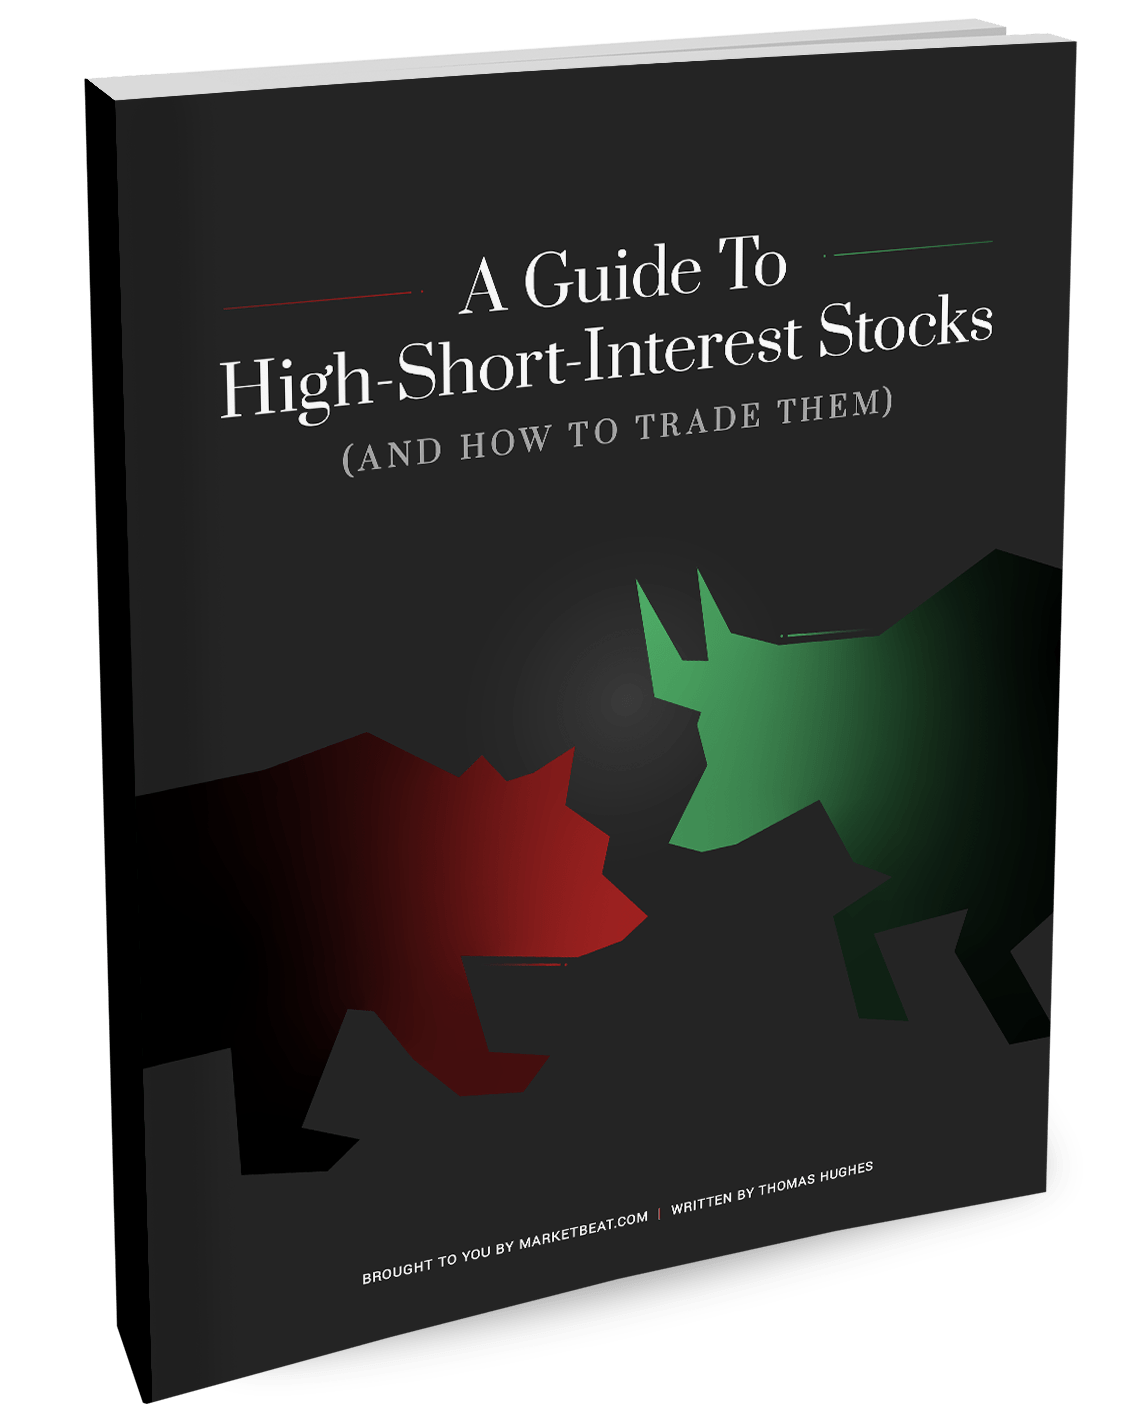 Una guía para acciones de alto interés corto